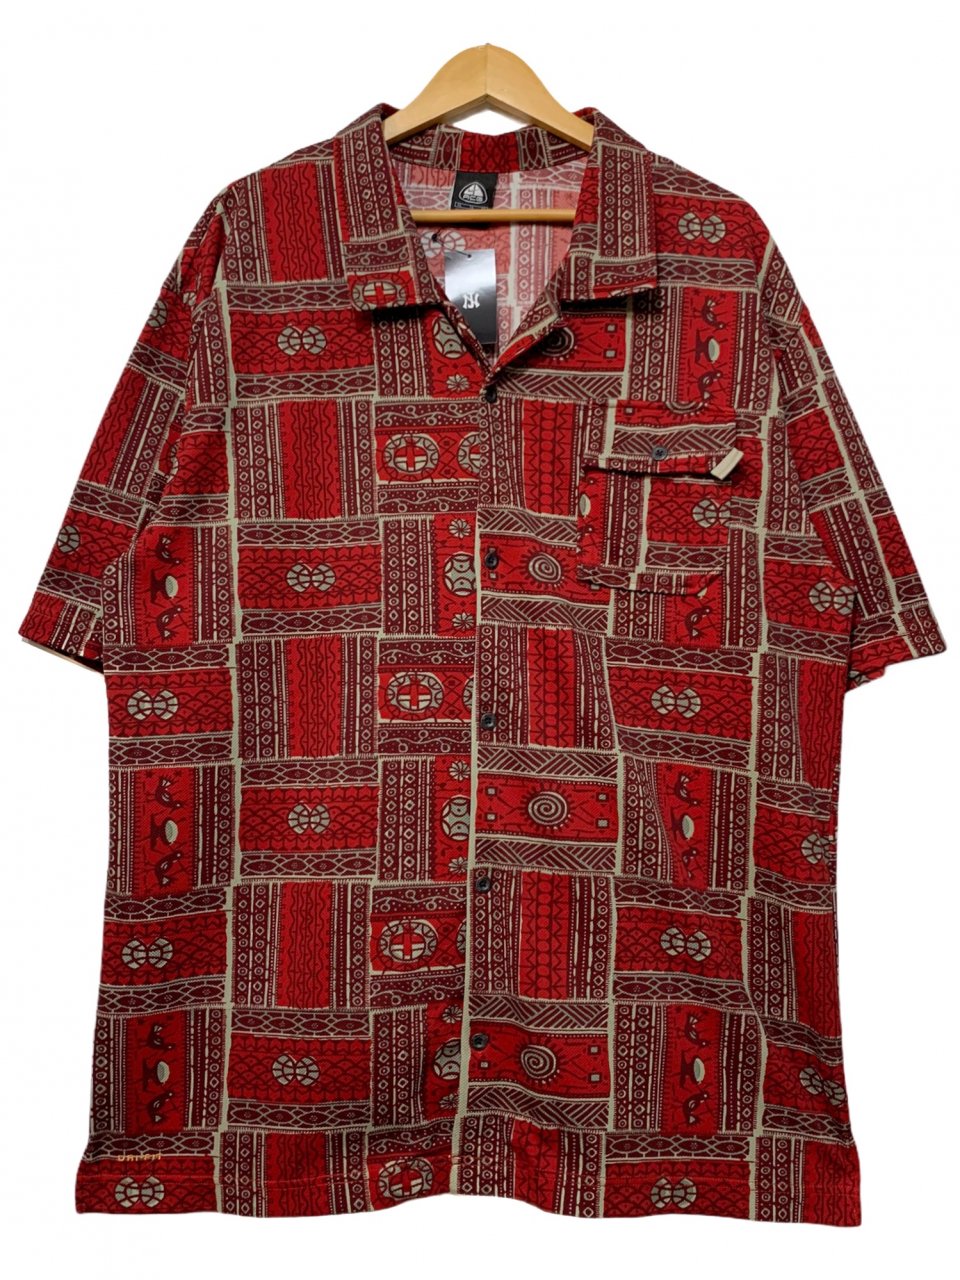 07年 NIKE ACG Dri-Fit S/S Shirt 赤 XL 00s ナイキ エーシージー 半袖 